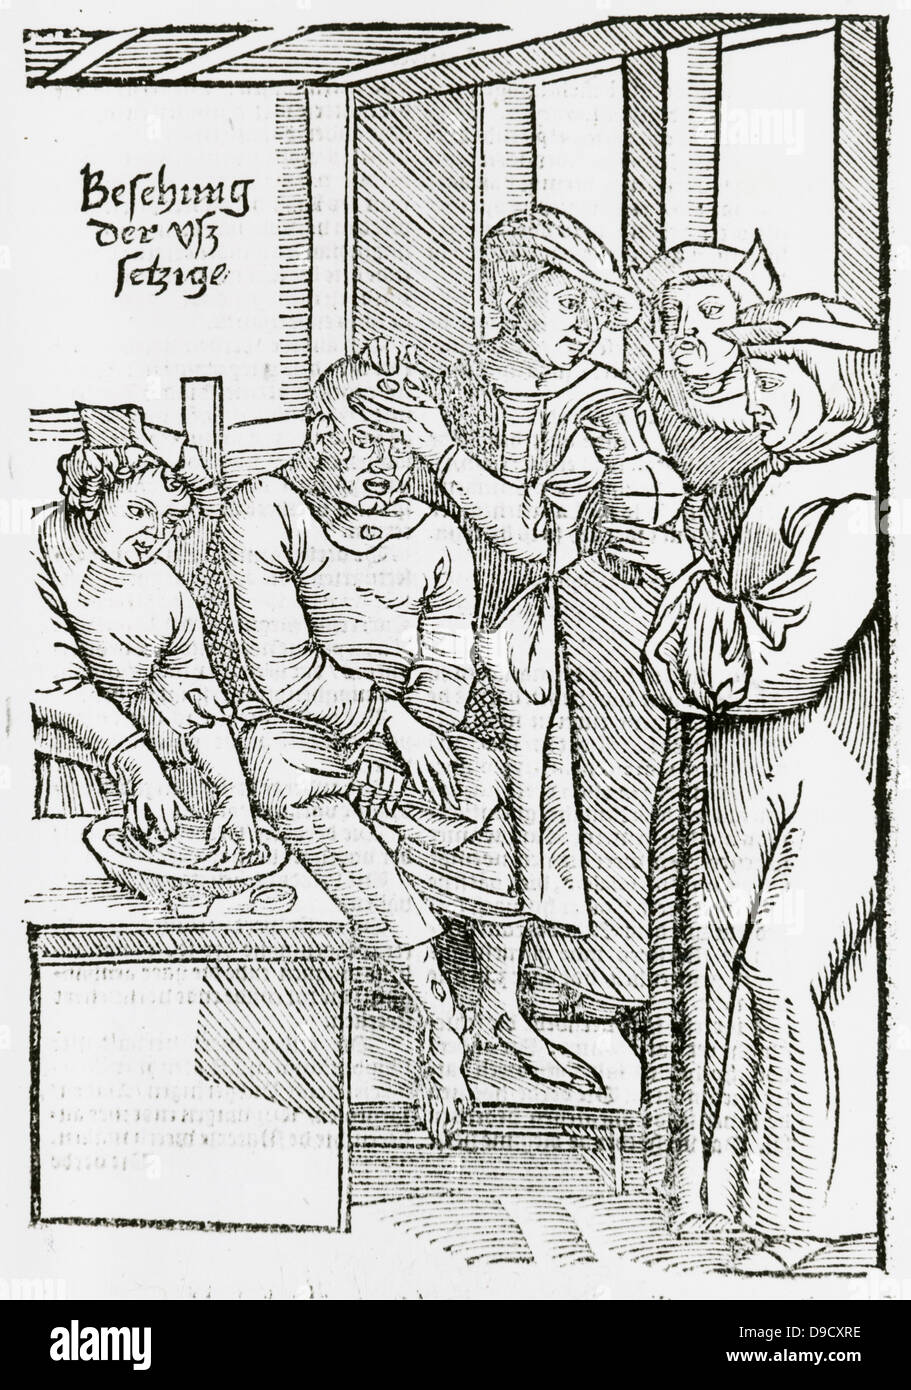 Los médicos examinar a un paciente con lepra. Debido al temor de contraer la lepra por el contacto con un paciente, los leprosos eran considerados impuros y aisladas en hospitales de leprosos. Xilografía, Amsterdam, 1593. Foto de stock